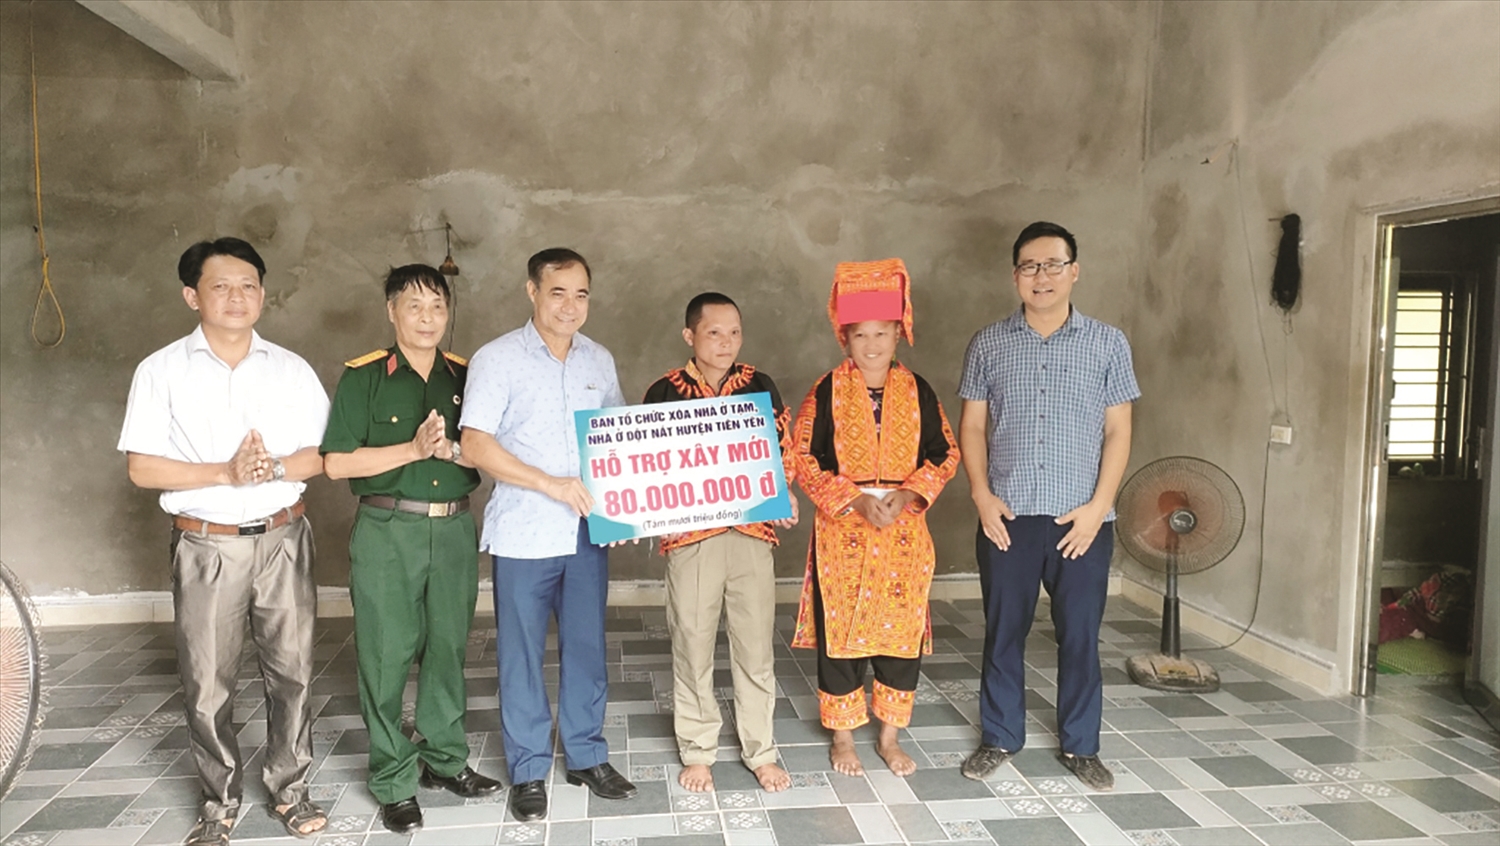 Lãnh đạo huyện Tiên Yên trao kinh phí hỗ trợ xây nhà cho hộ ông Chíu Chăn Sềnh, thôn Đoàn Kết, xã Hà Lâu.